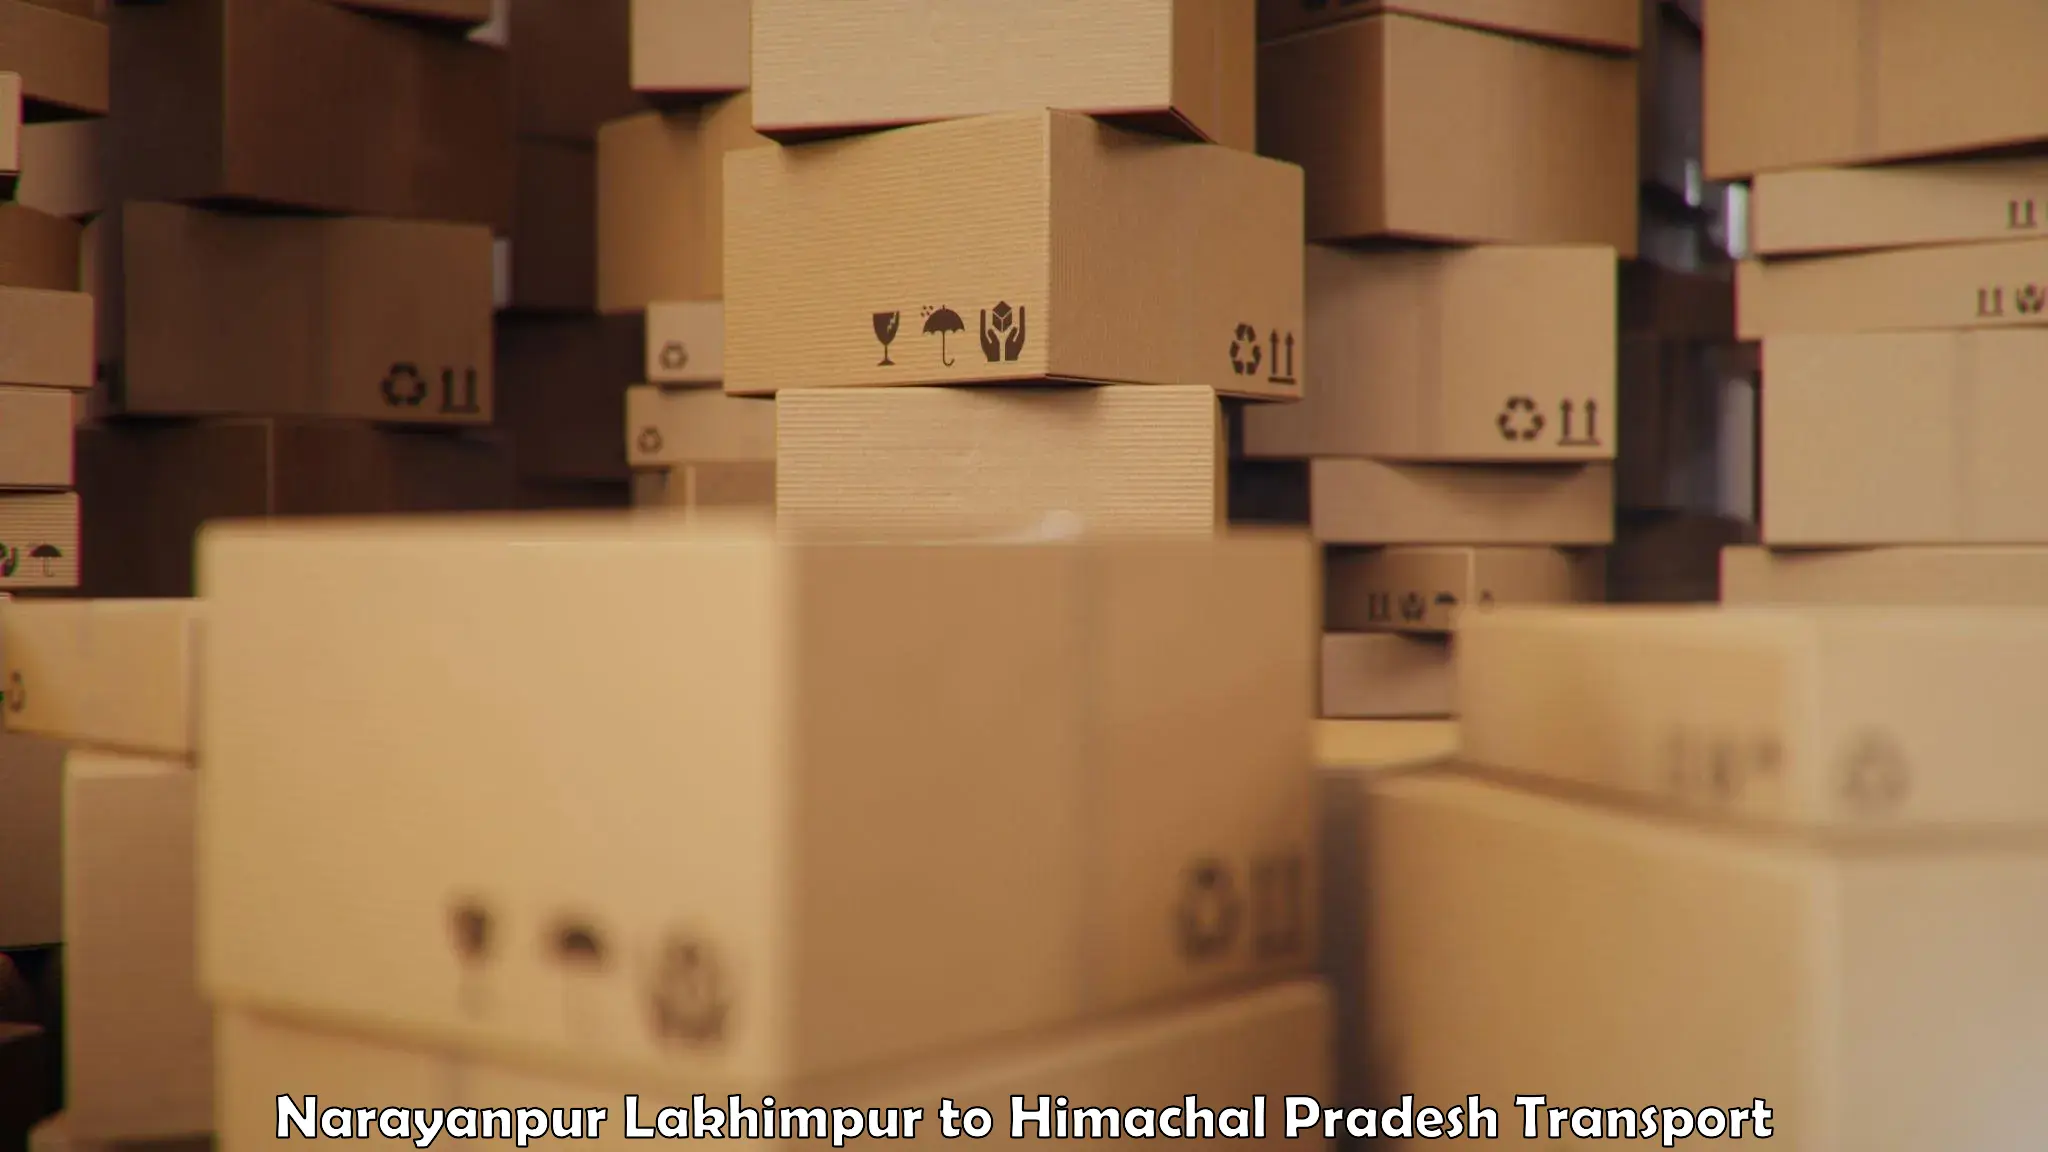 International cargo transportation services Narayanpur Lakhimpur to Anni Kullu